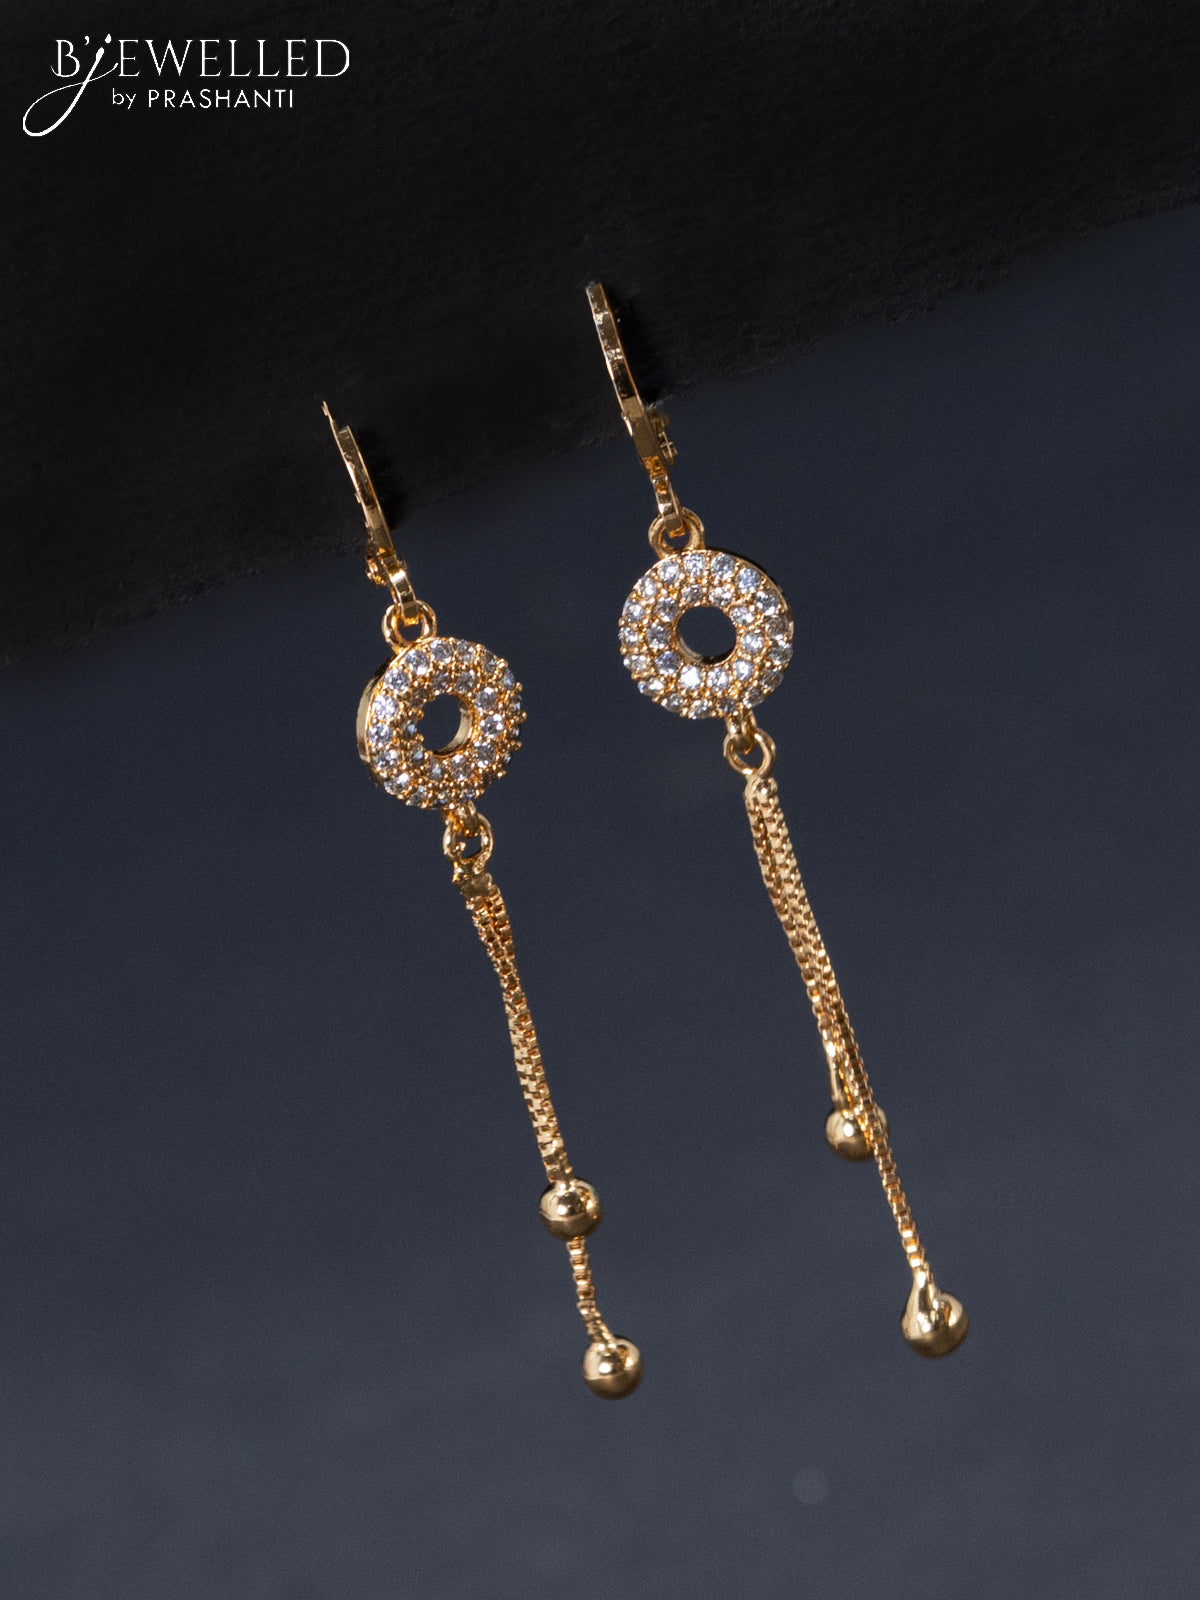 Ruby Drop Hanging Chain Earrings - 18k Yellow Gold